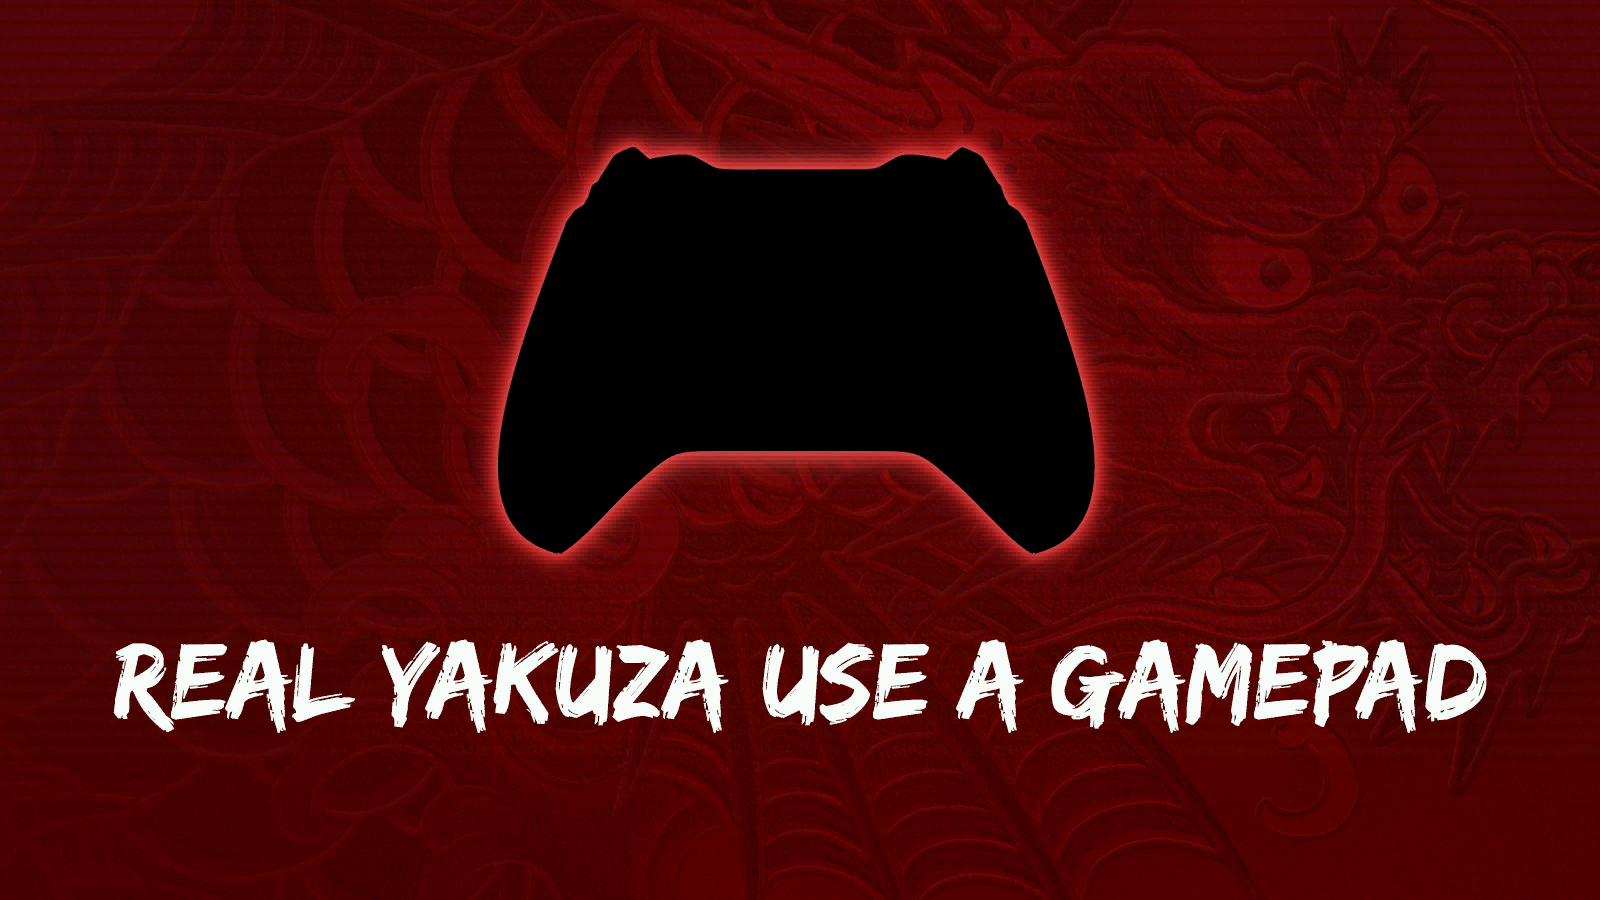 Yakuza: Like a Dragon - Gamepad Advisory Screen